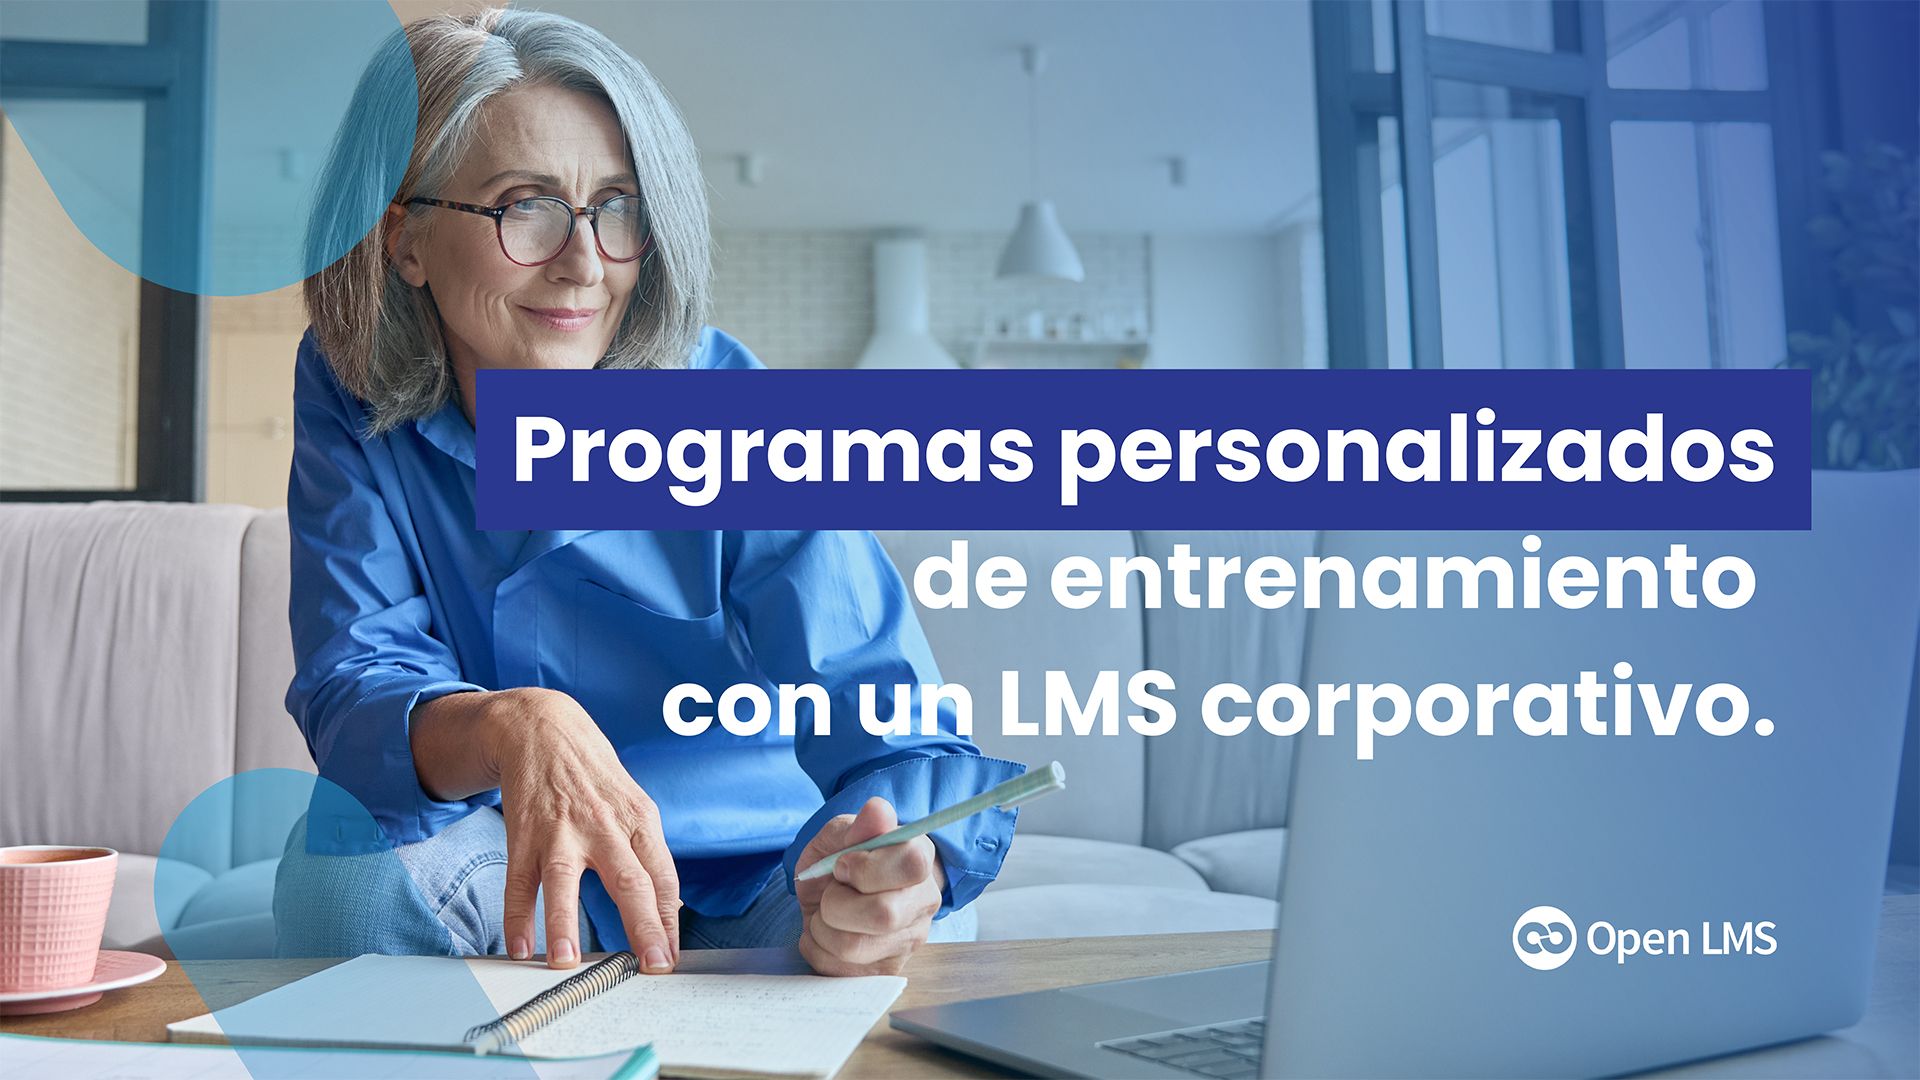 Cómo crear y dar seguimiento a programas personalizados de entrenamiento con un LMS corporativo